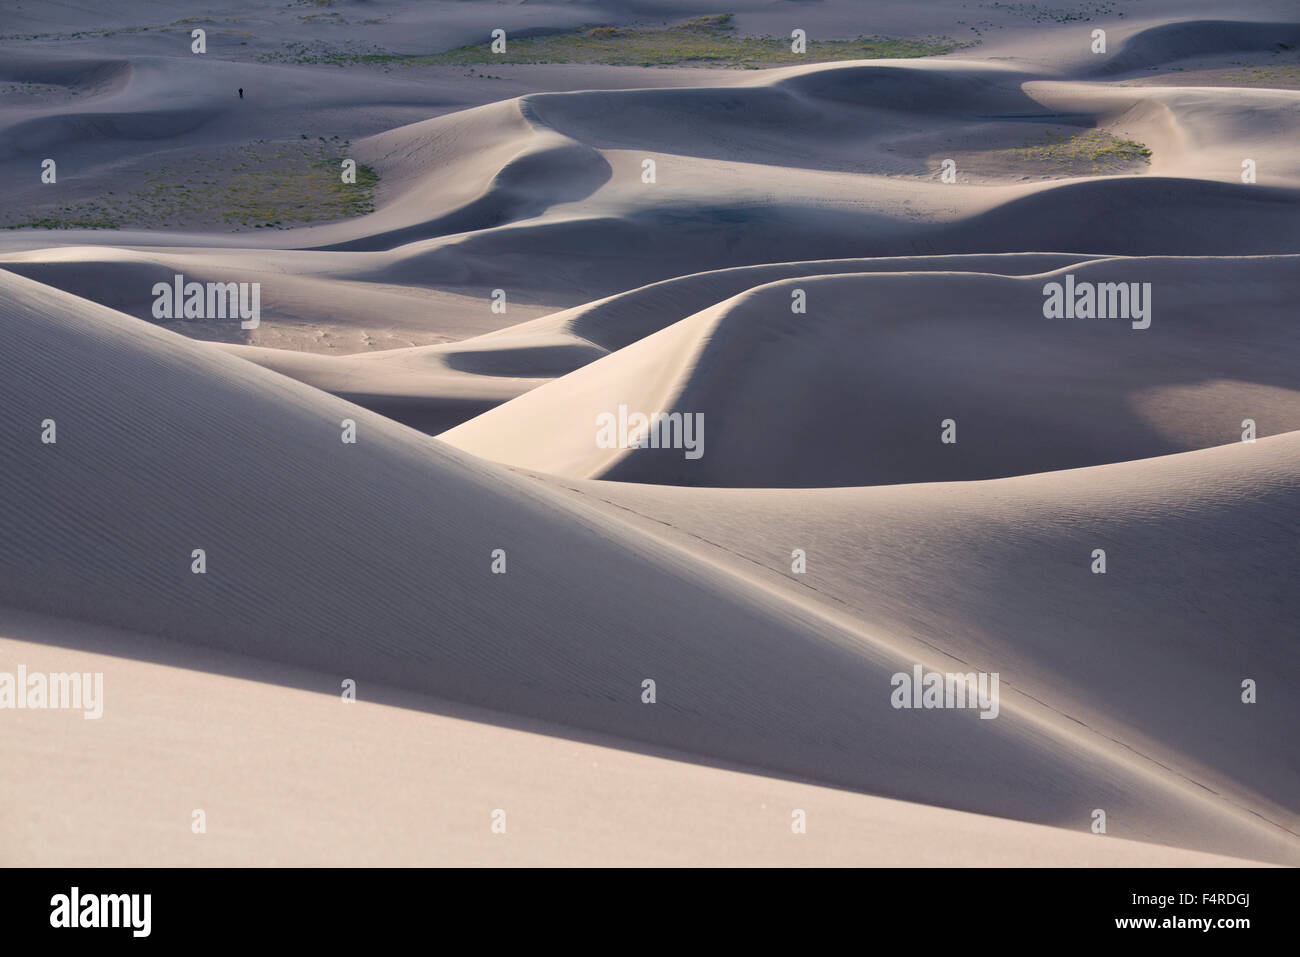 Stati Uniti d'America, STATIUNITI, America, Southwest Colorado, Alamosa County, grandi dune di sabbia, Parco Nazionale, preservare le dune, escursionismo, escursionista Foto Stock